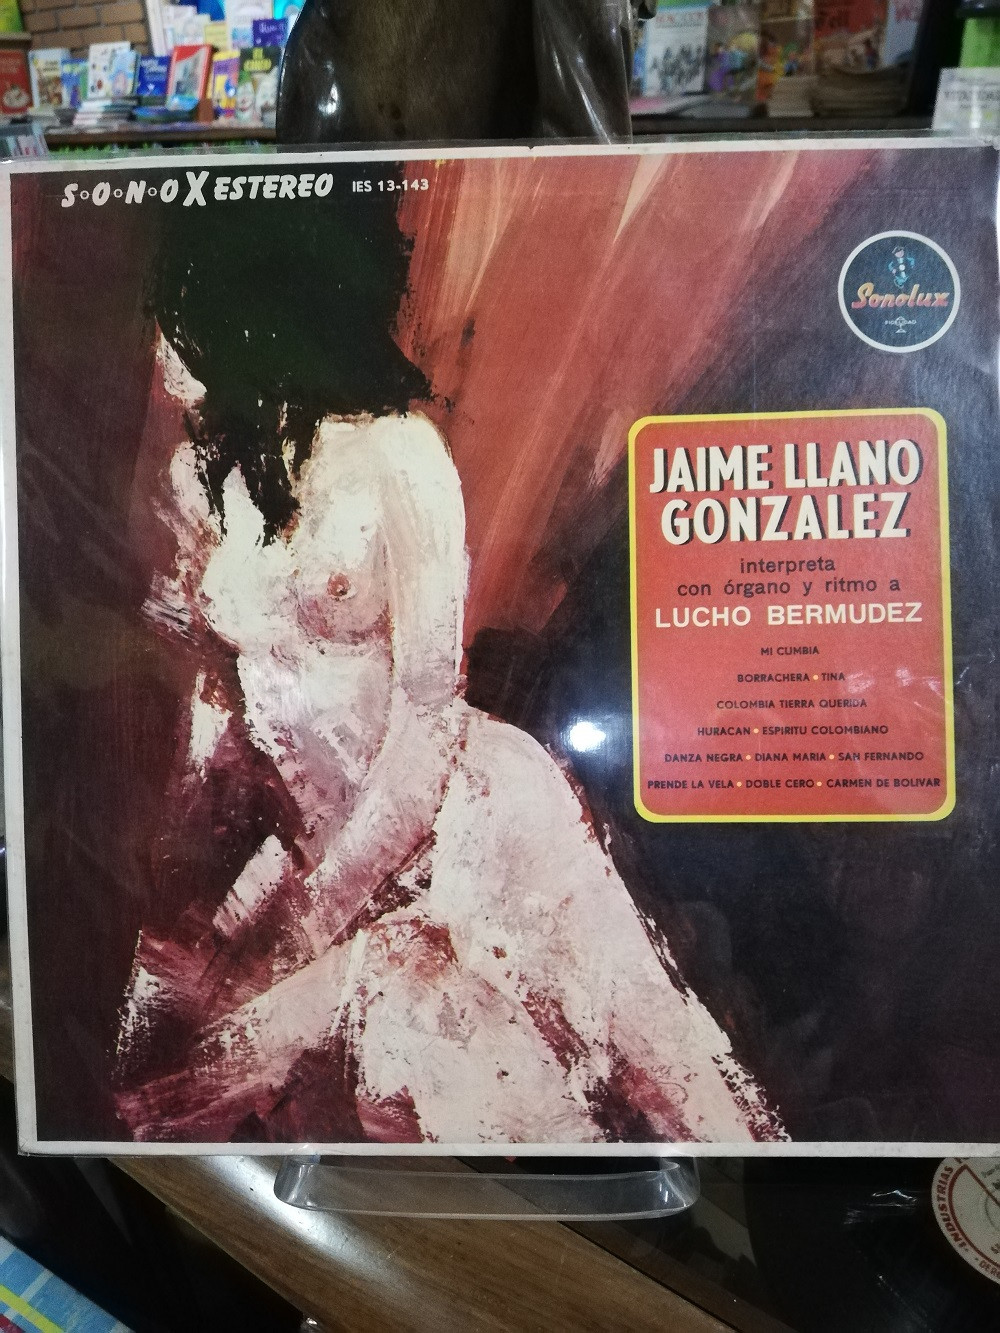 Imagen LP JAIME LLANO GONZALEZ - INTERPRETA CON ORGANO Y RITMO A LUCHO BERMUDEZ